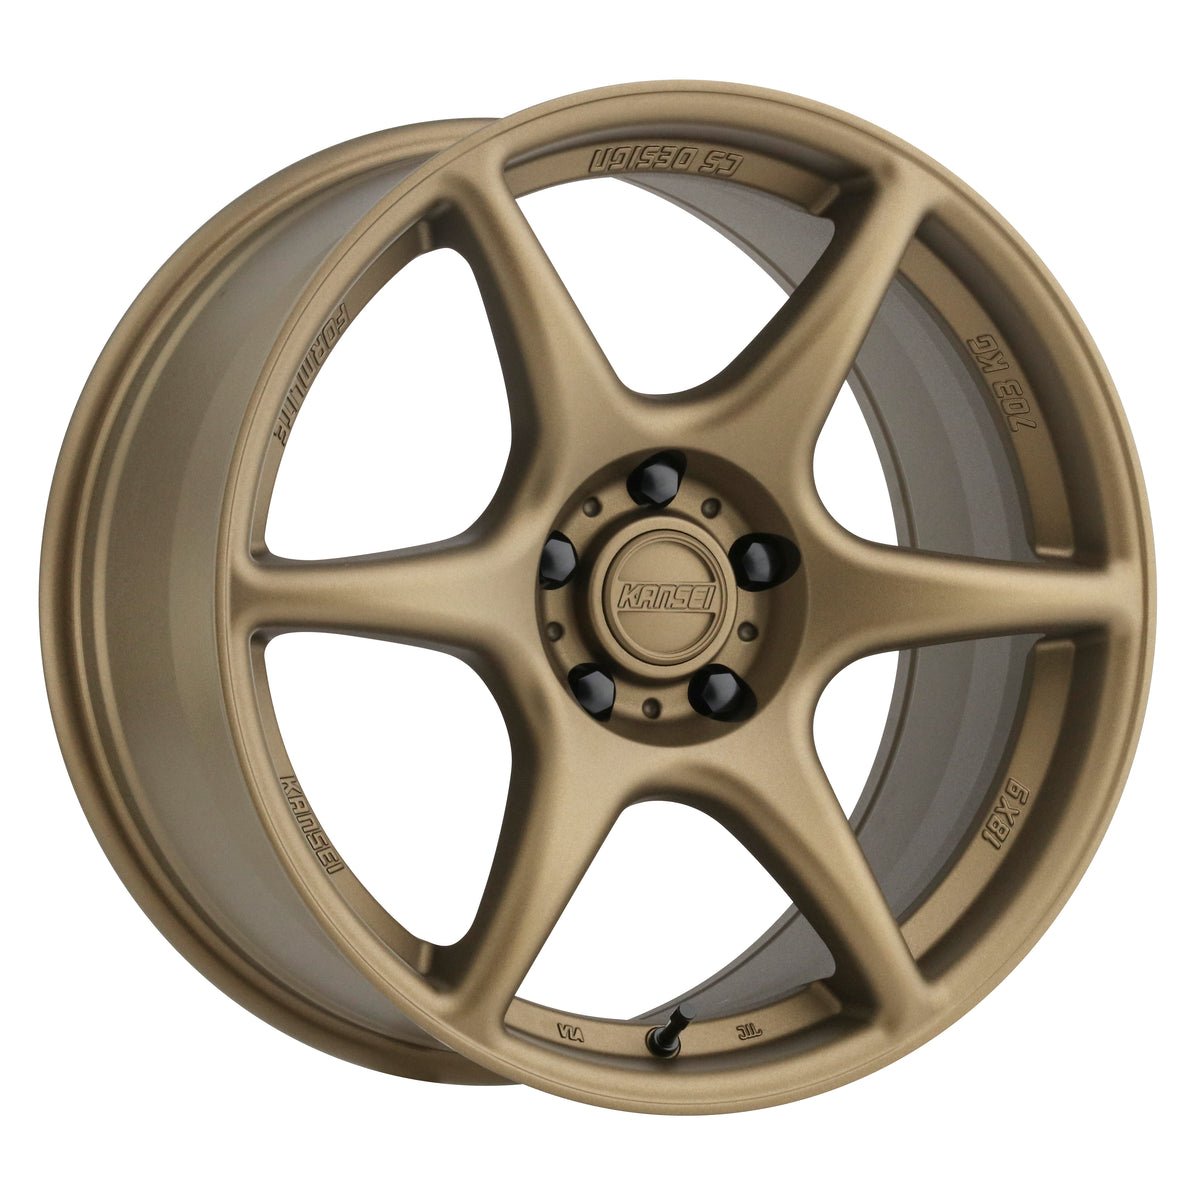 K11B TANDEM Wheel, Size: 18" x 8.50", Bolt Pattern: 5 x 112 mm, Backspace: 6.13" [Finish: Bronze]